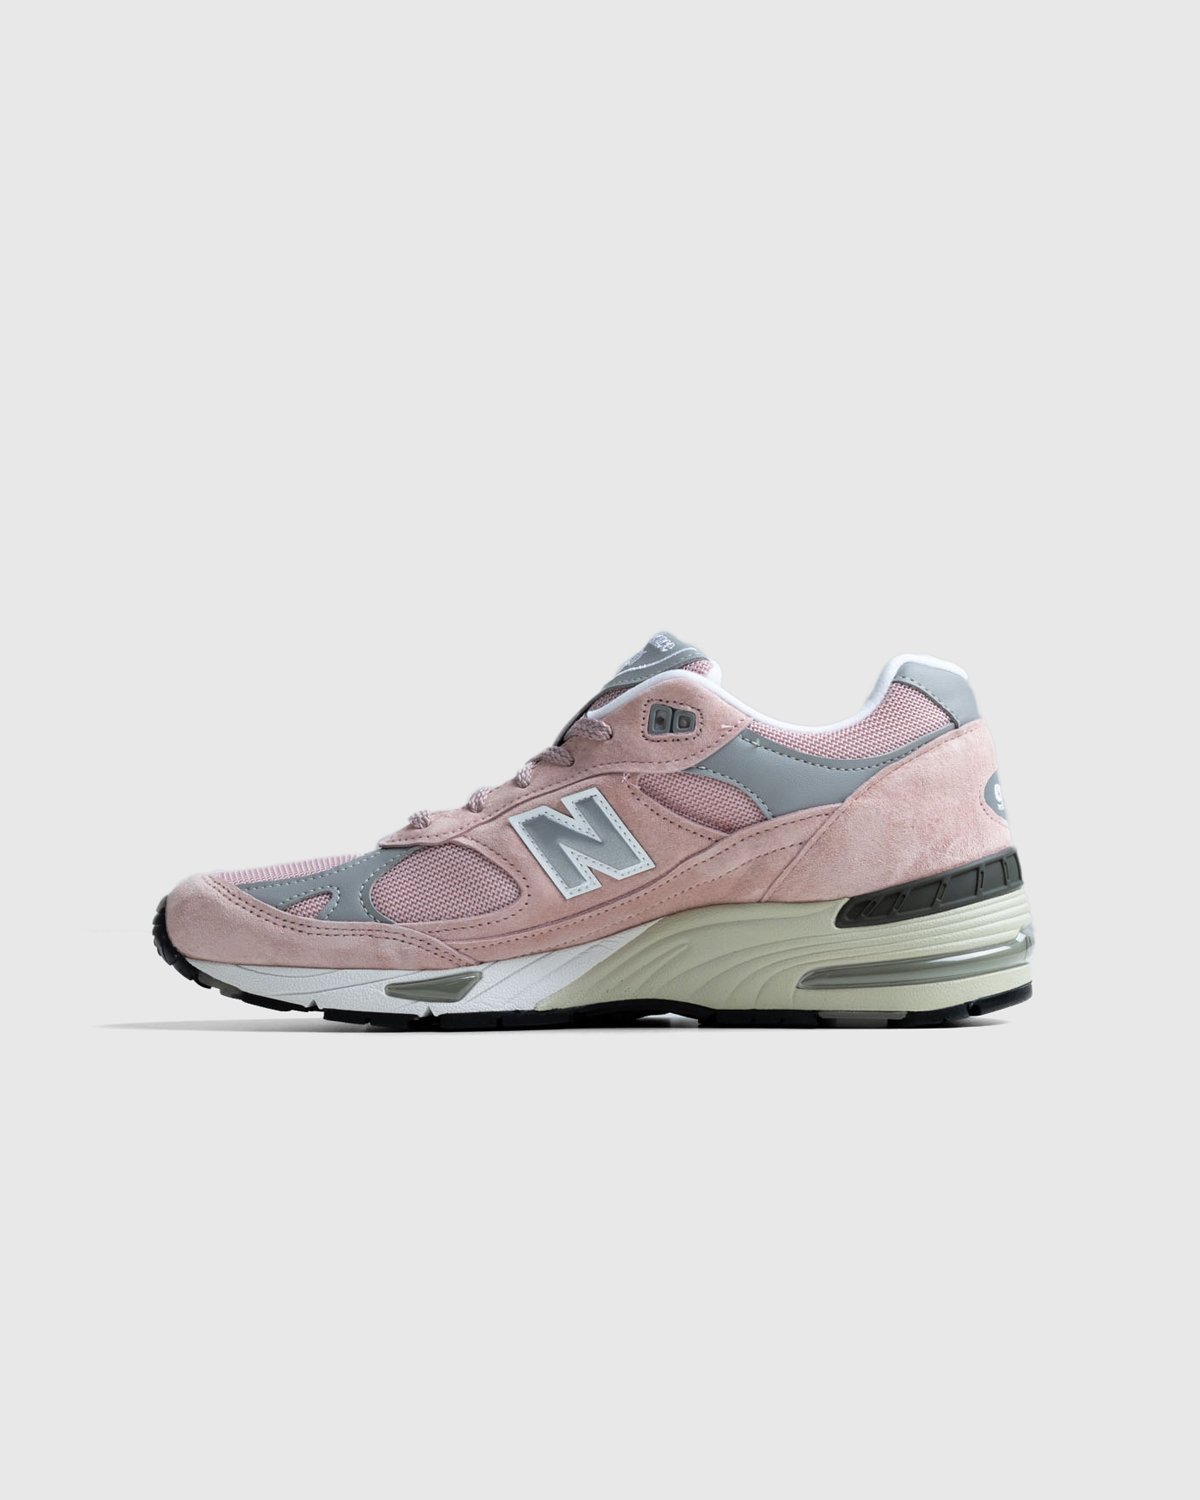 New Balance - M991PNK Pink - Footwear - Pink - Image 4